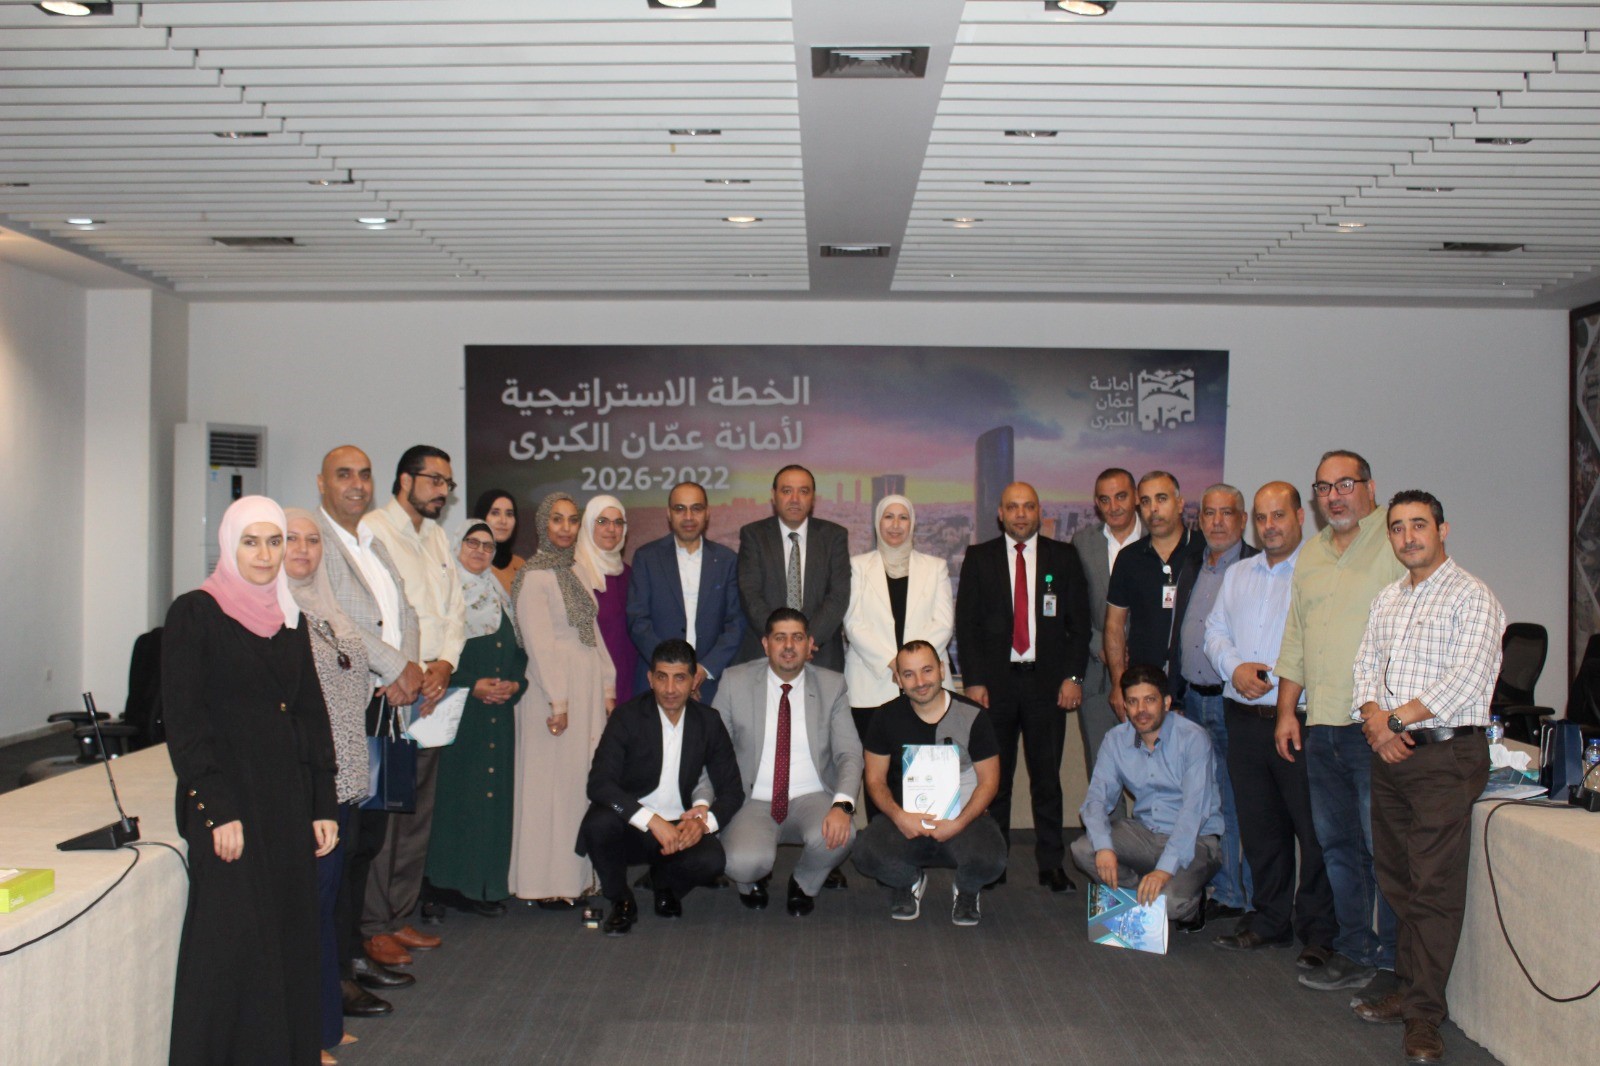 المنتدى العربي للمدن الذكية يعقد ورشة عمل "التكنولوجيا المالية والتحول الرقمي"